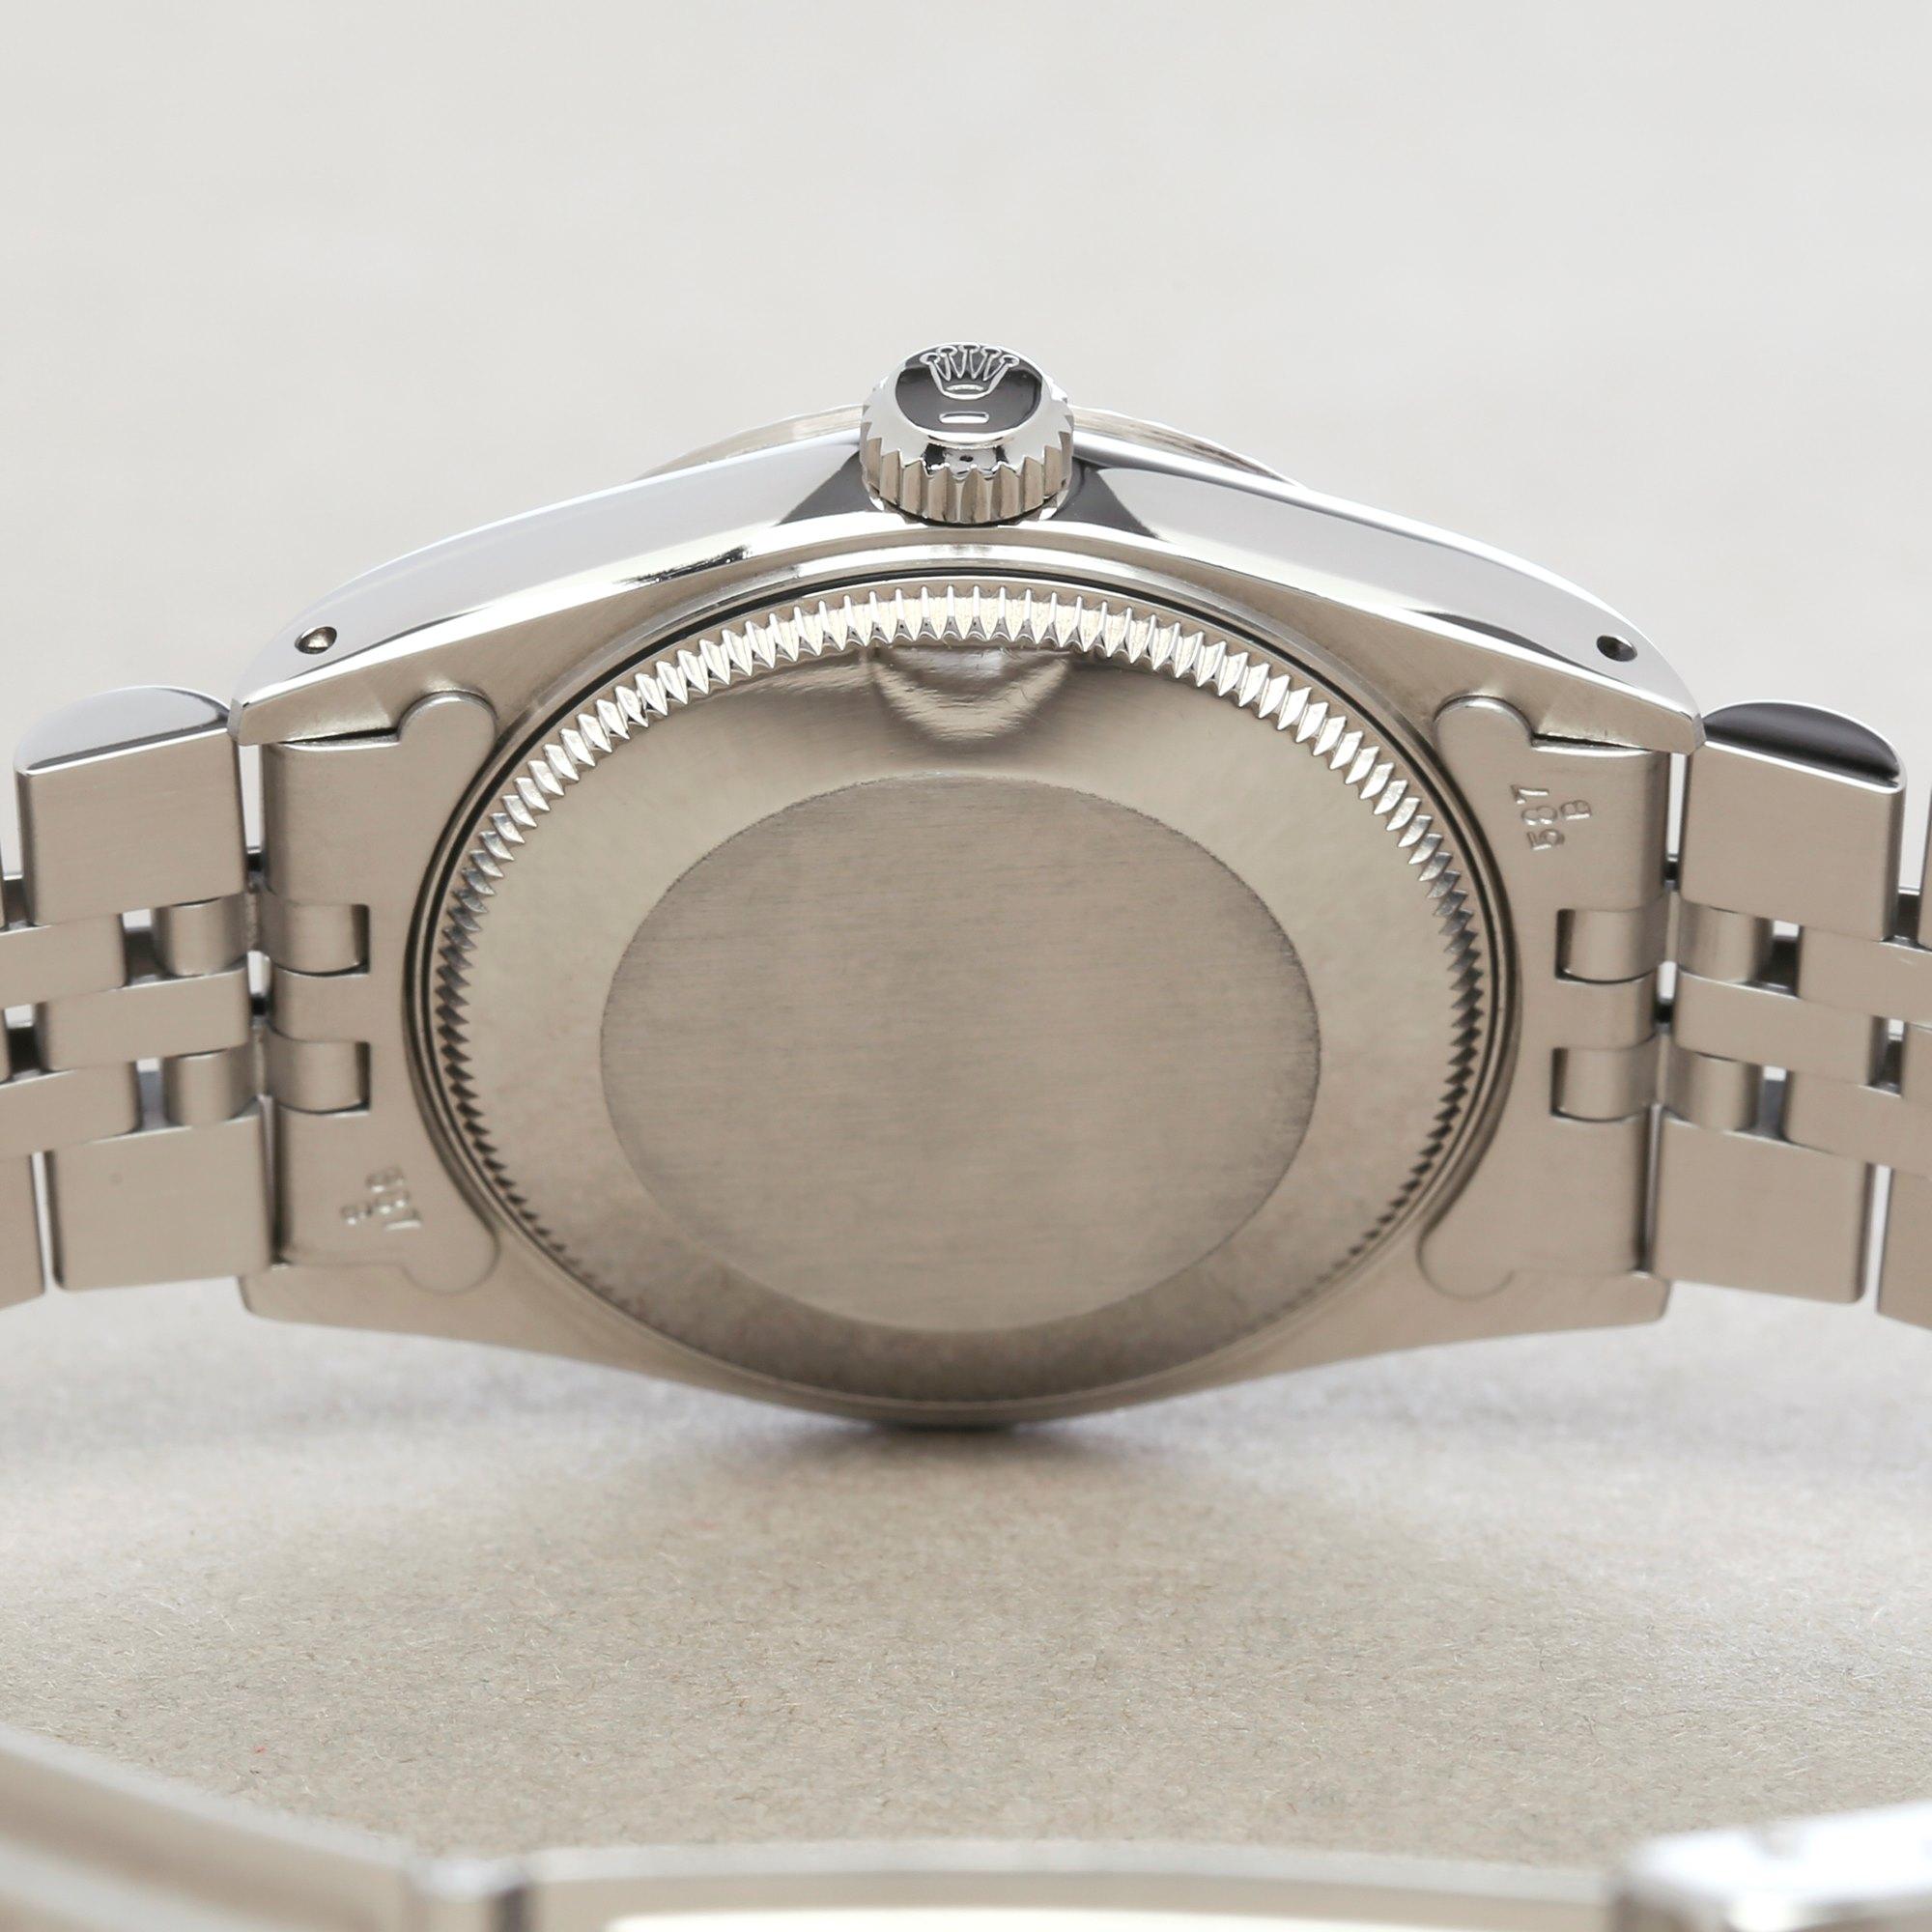 Rolex Datejust 31 68274 Ladies Stainless Steel Watch 4